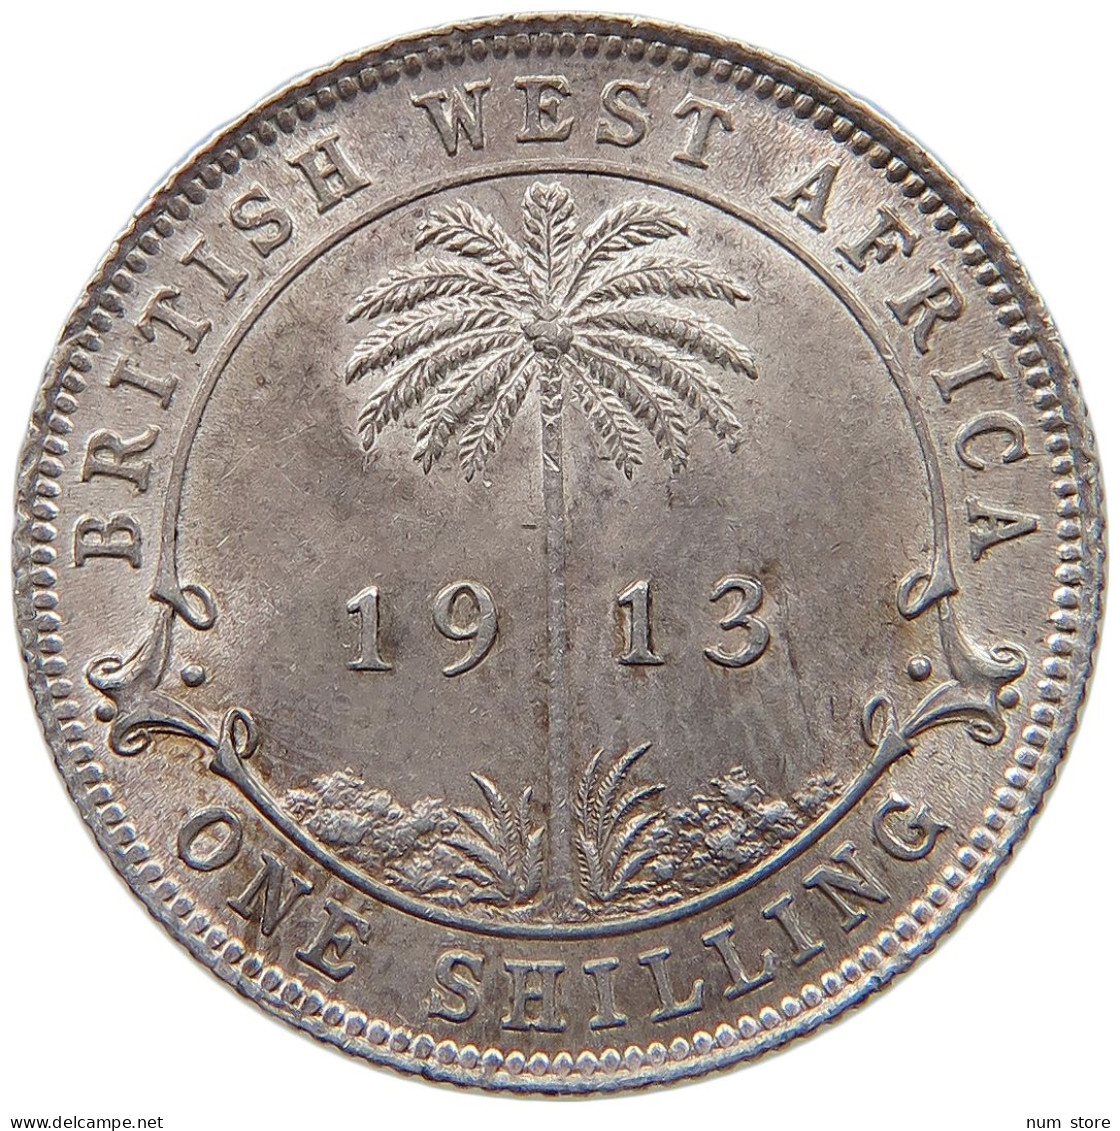 WEST AFRICA SHILLING 1913 George V. (1910-1936) #t111 1123 - Sammlungen